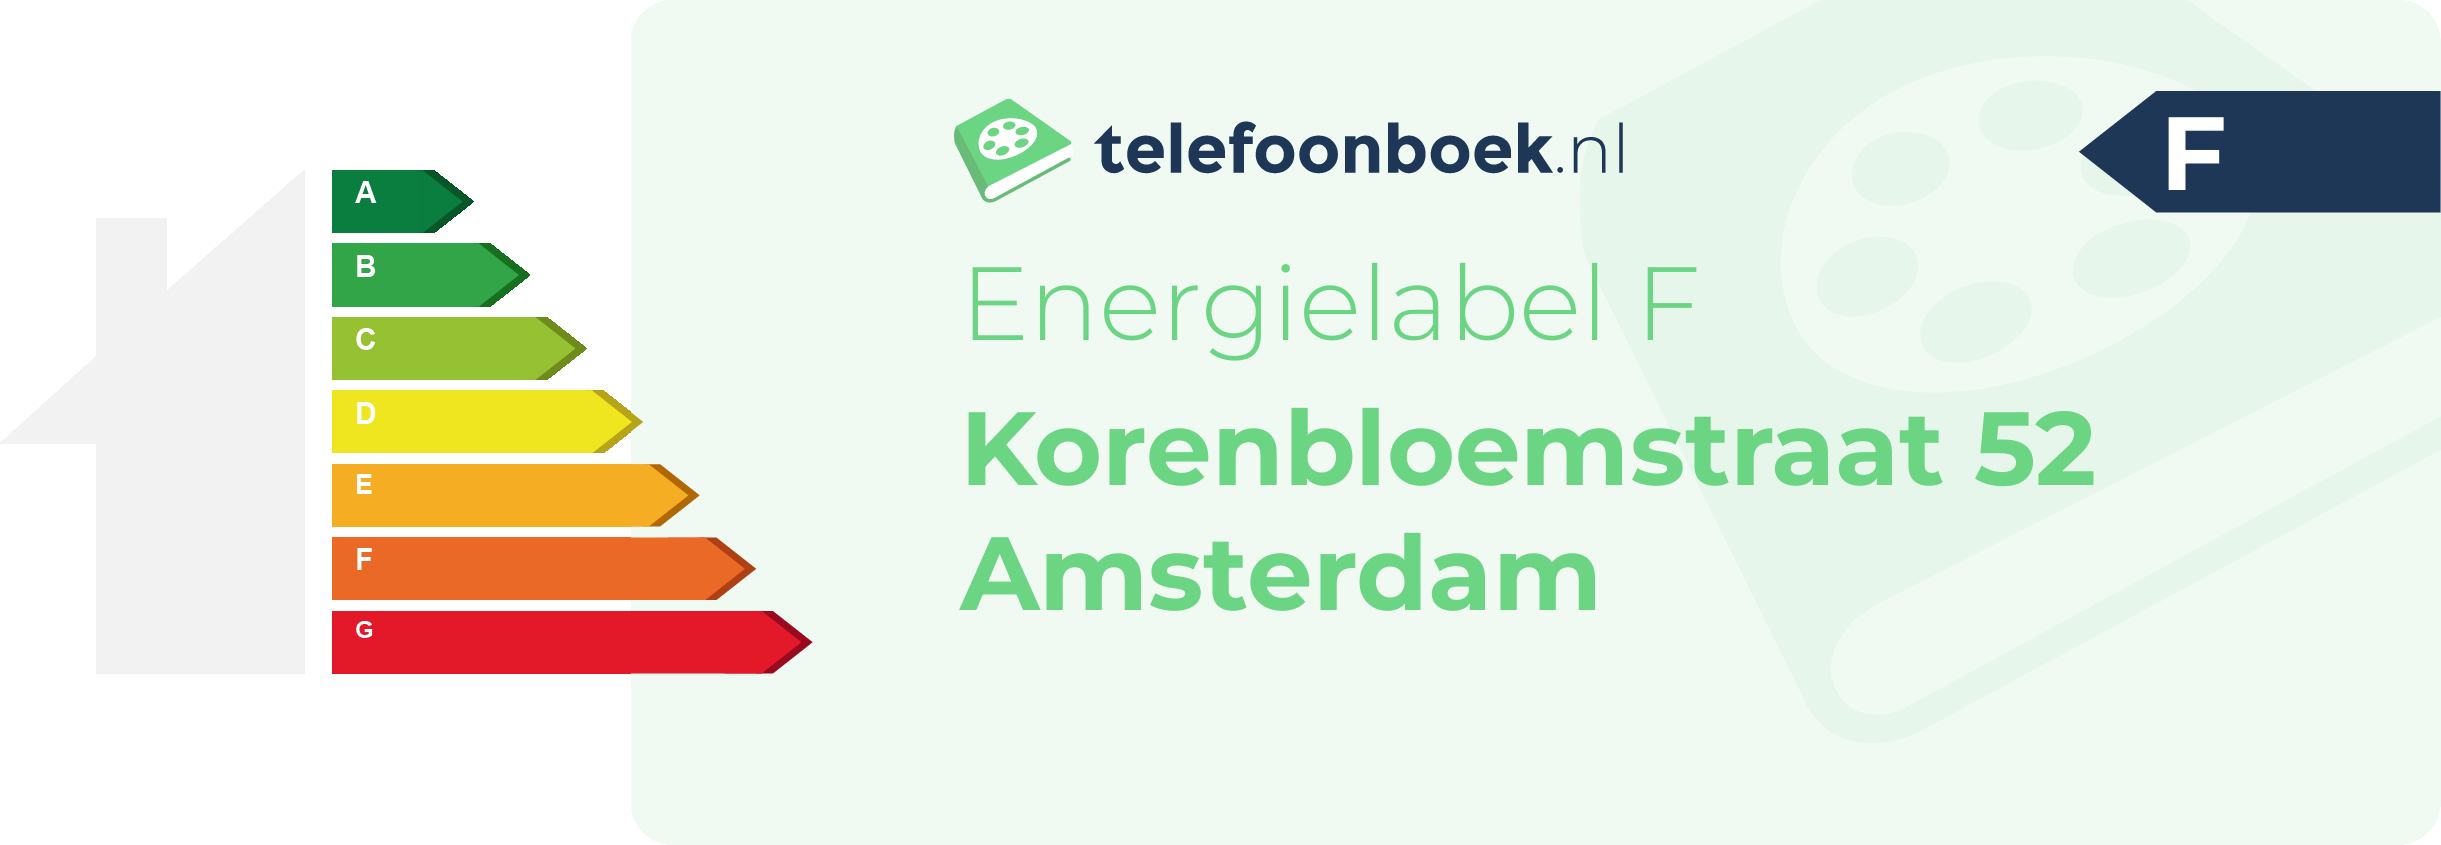 Energielabel Korenbloemstraat 52 Amsterdam